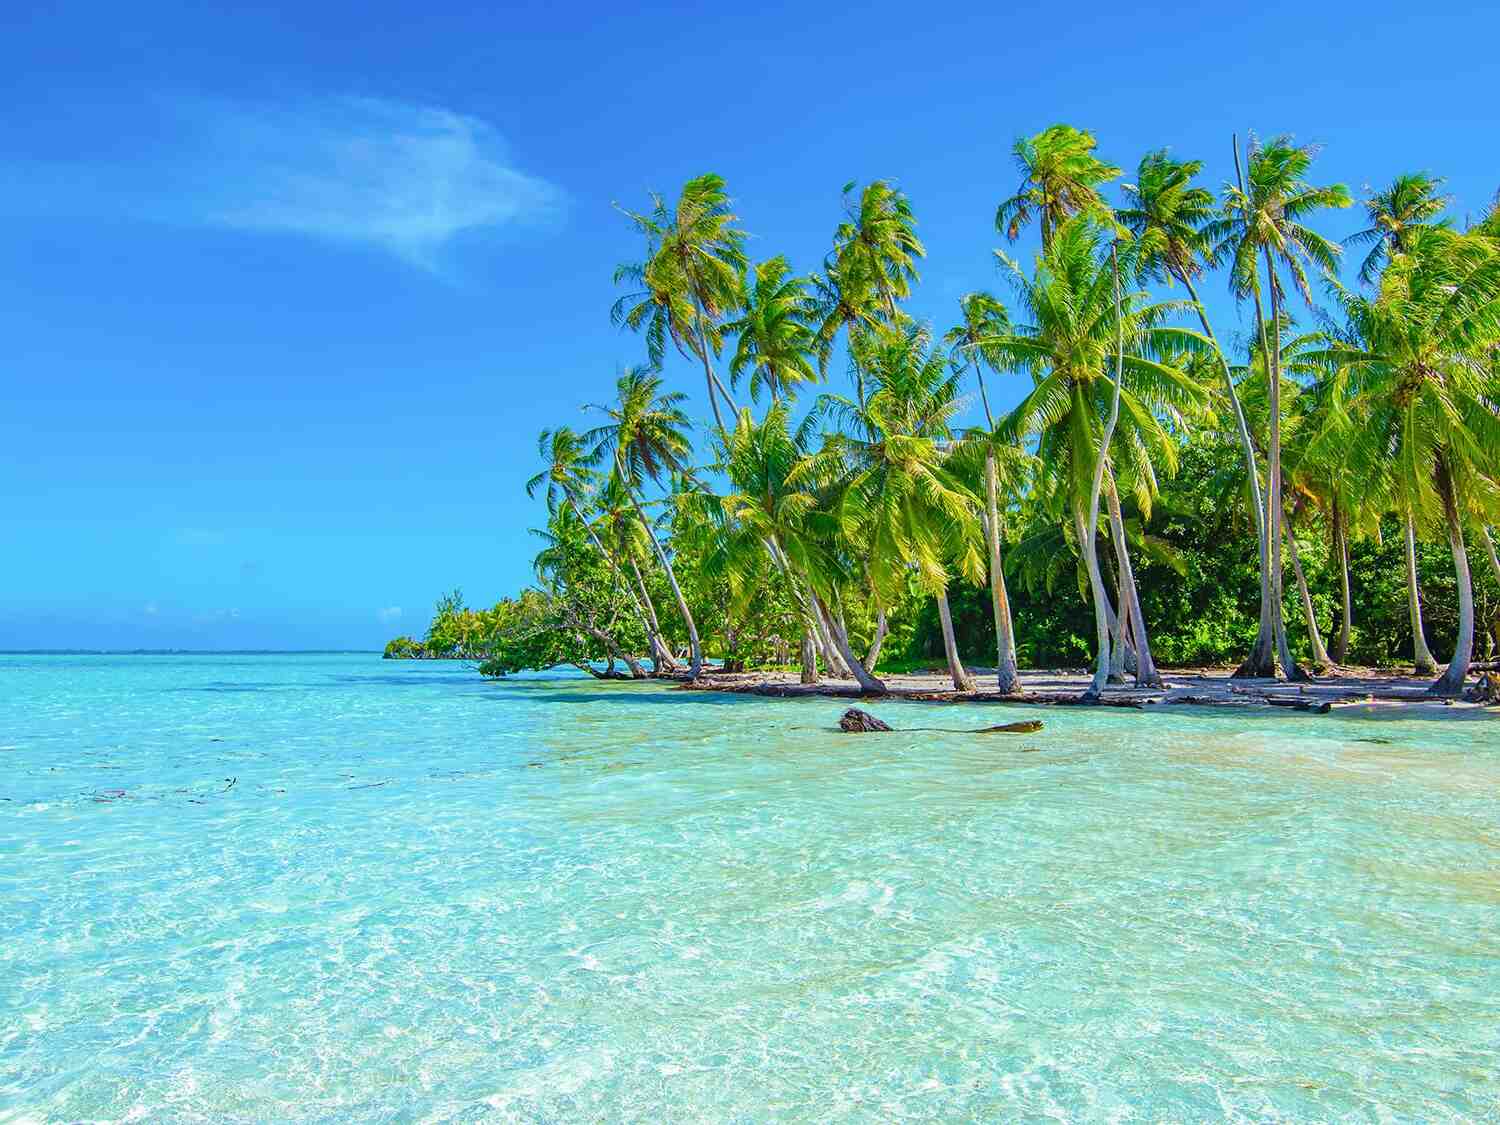 Является ли Таити частью Французской Полинезии?